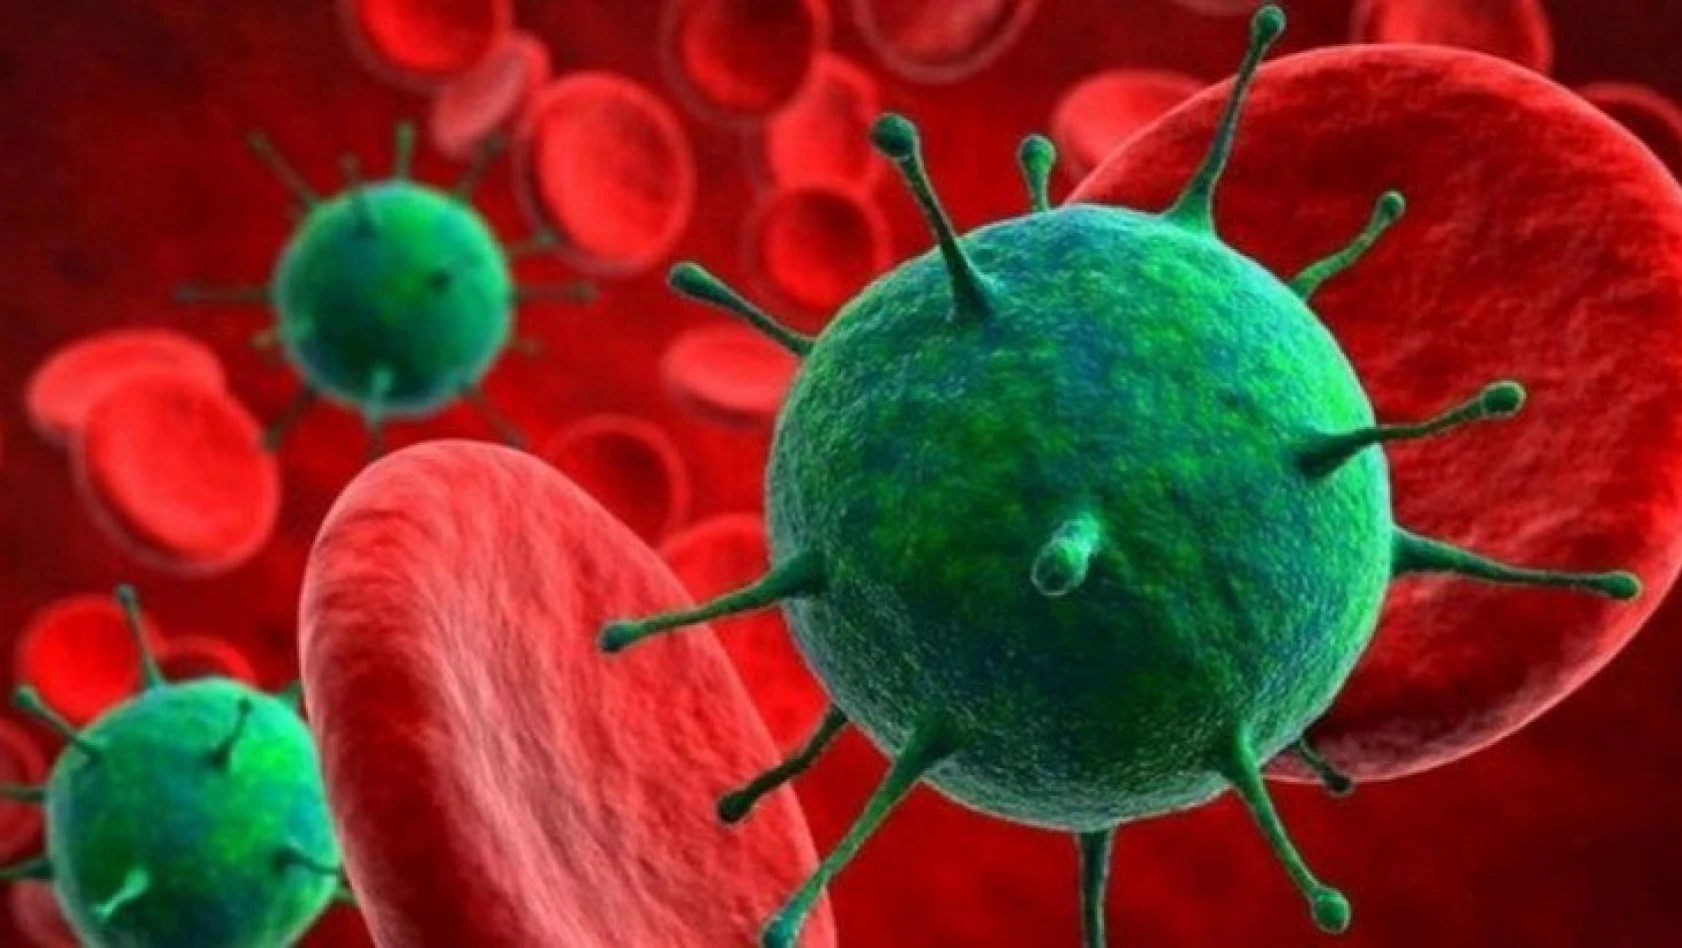 ODTÜ'nün mikroskobuyla Fırat Üniversitesi başardı! İşte korona virüsün ilk fotoğrafı!